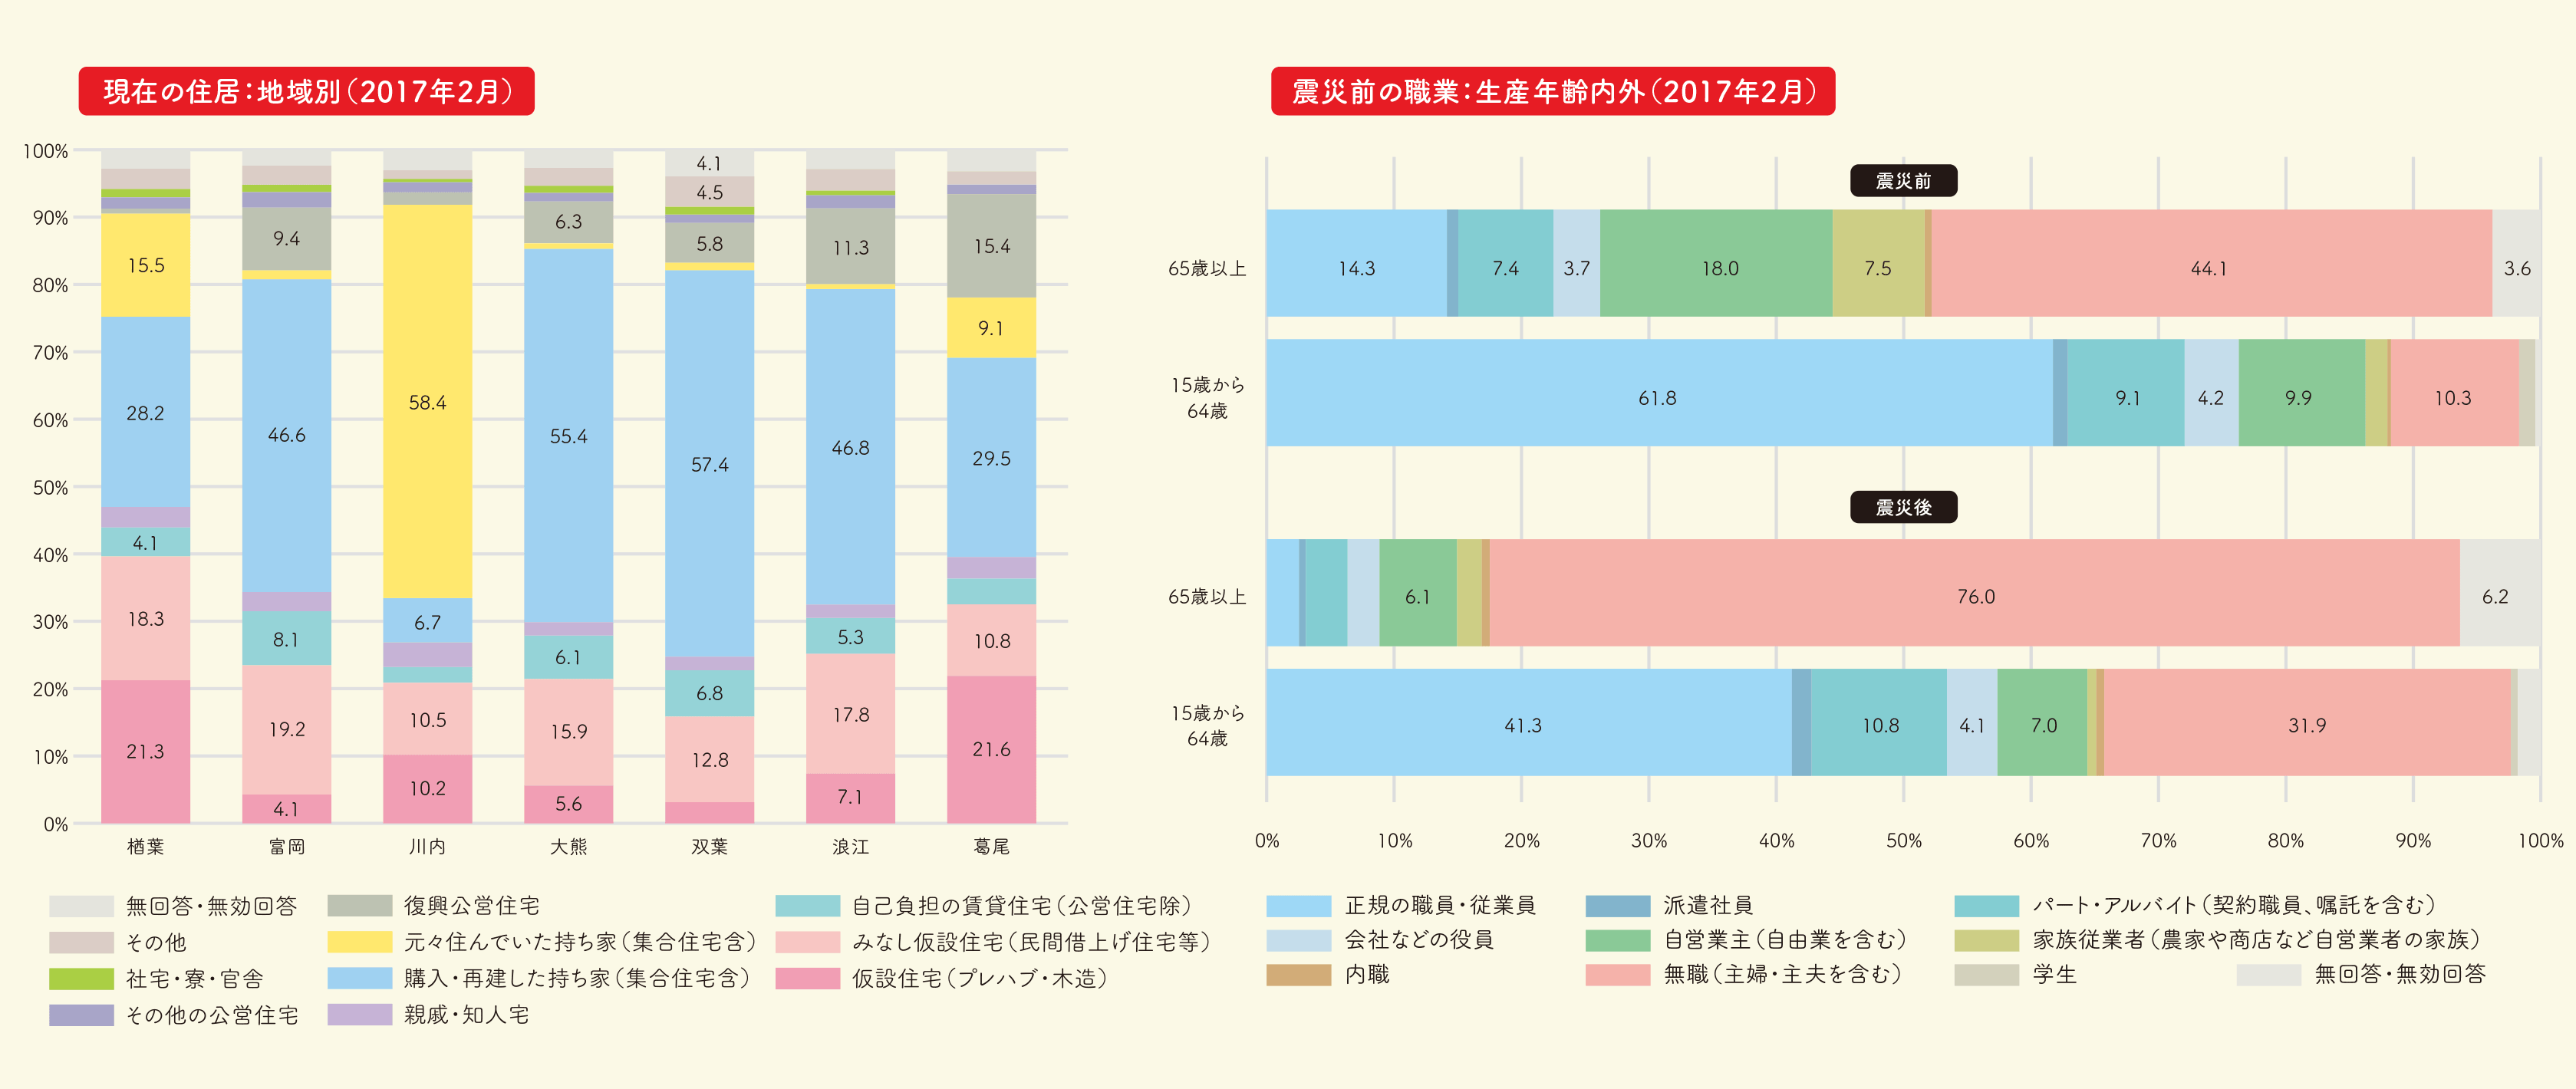 グラフ「現在の住居：地域別（2017年2月）」「震災前の職業：生産年齢内外（2017年2月）